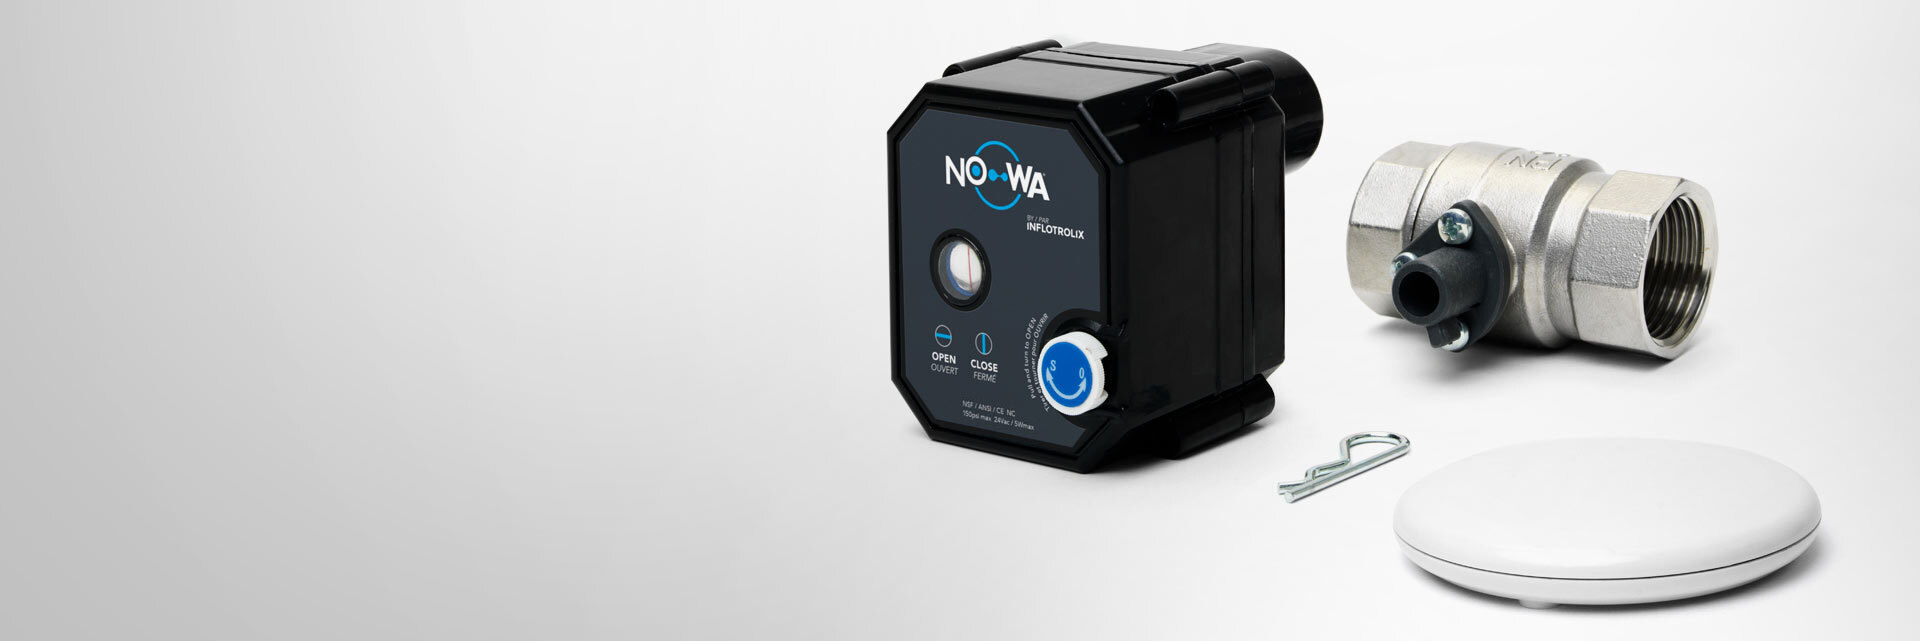 système de coupure d'eau nowa 360 avec détecteur intégré sans-fil